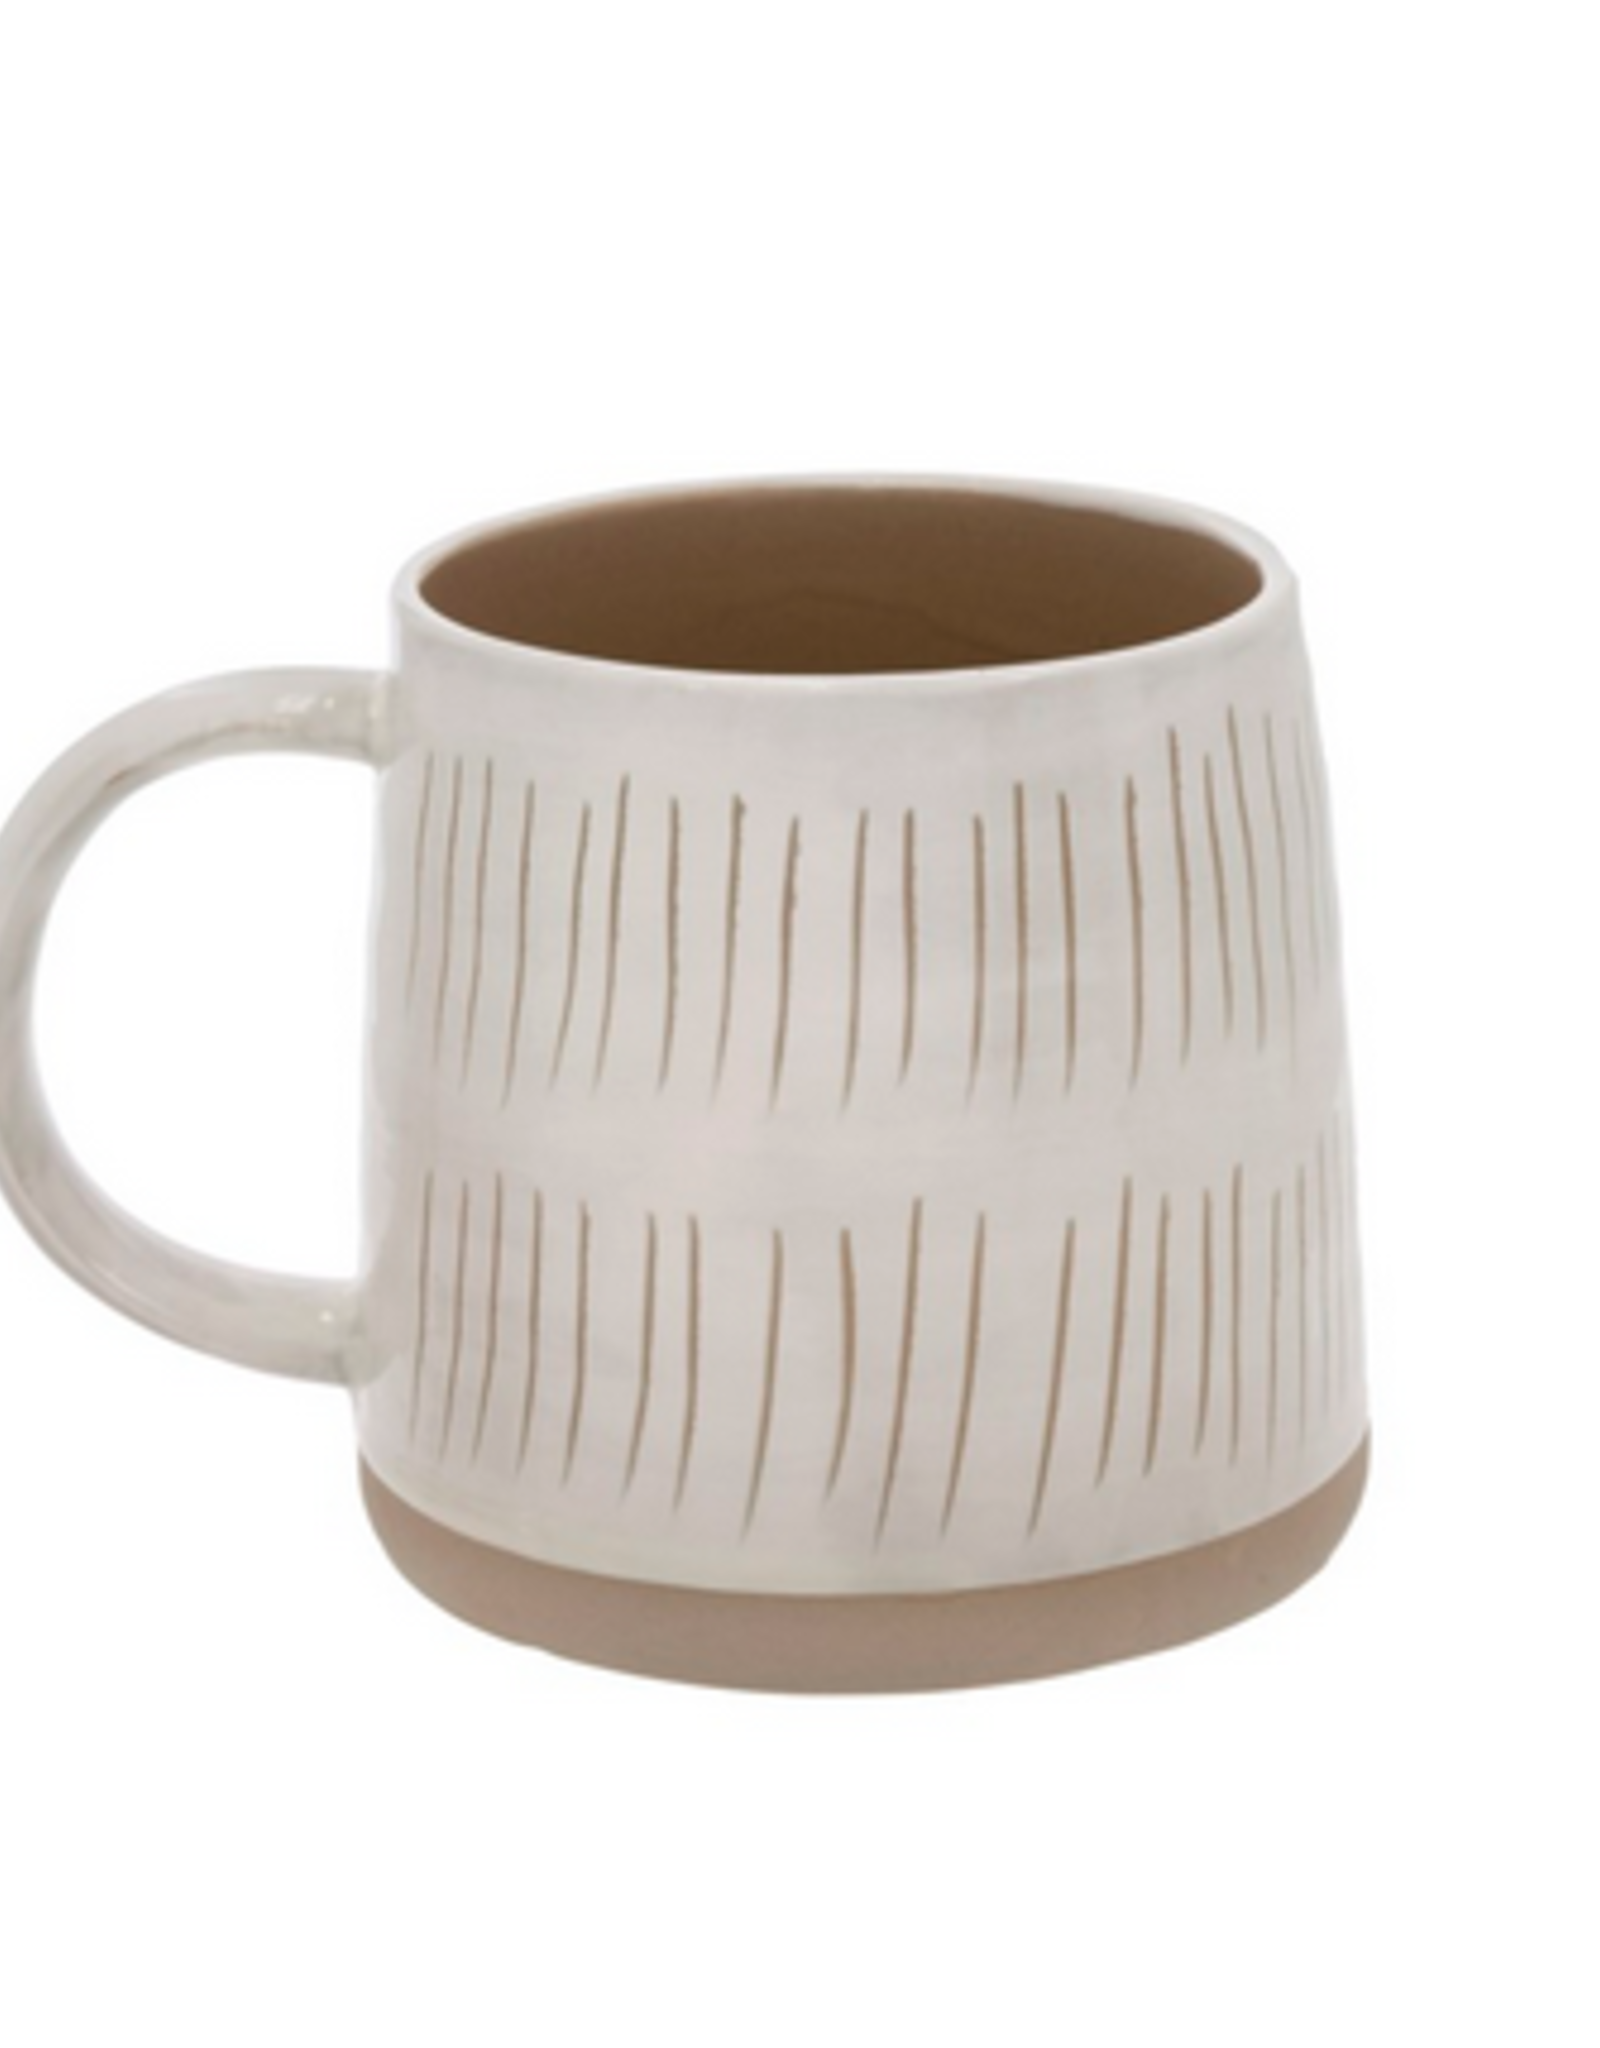 Sandstone Mug - Short Lines H4"